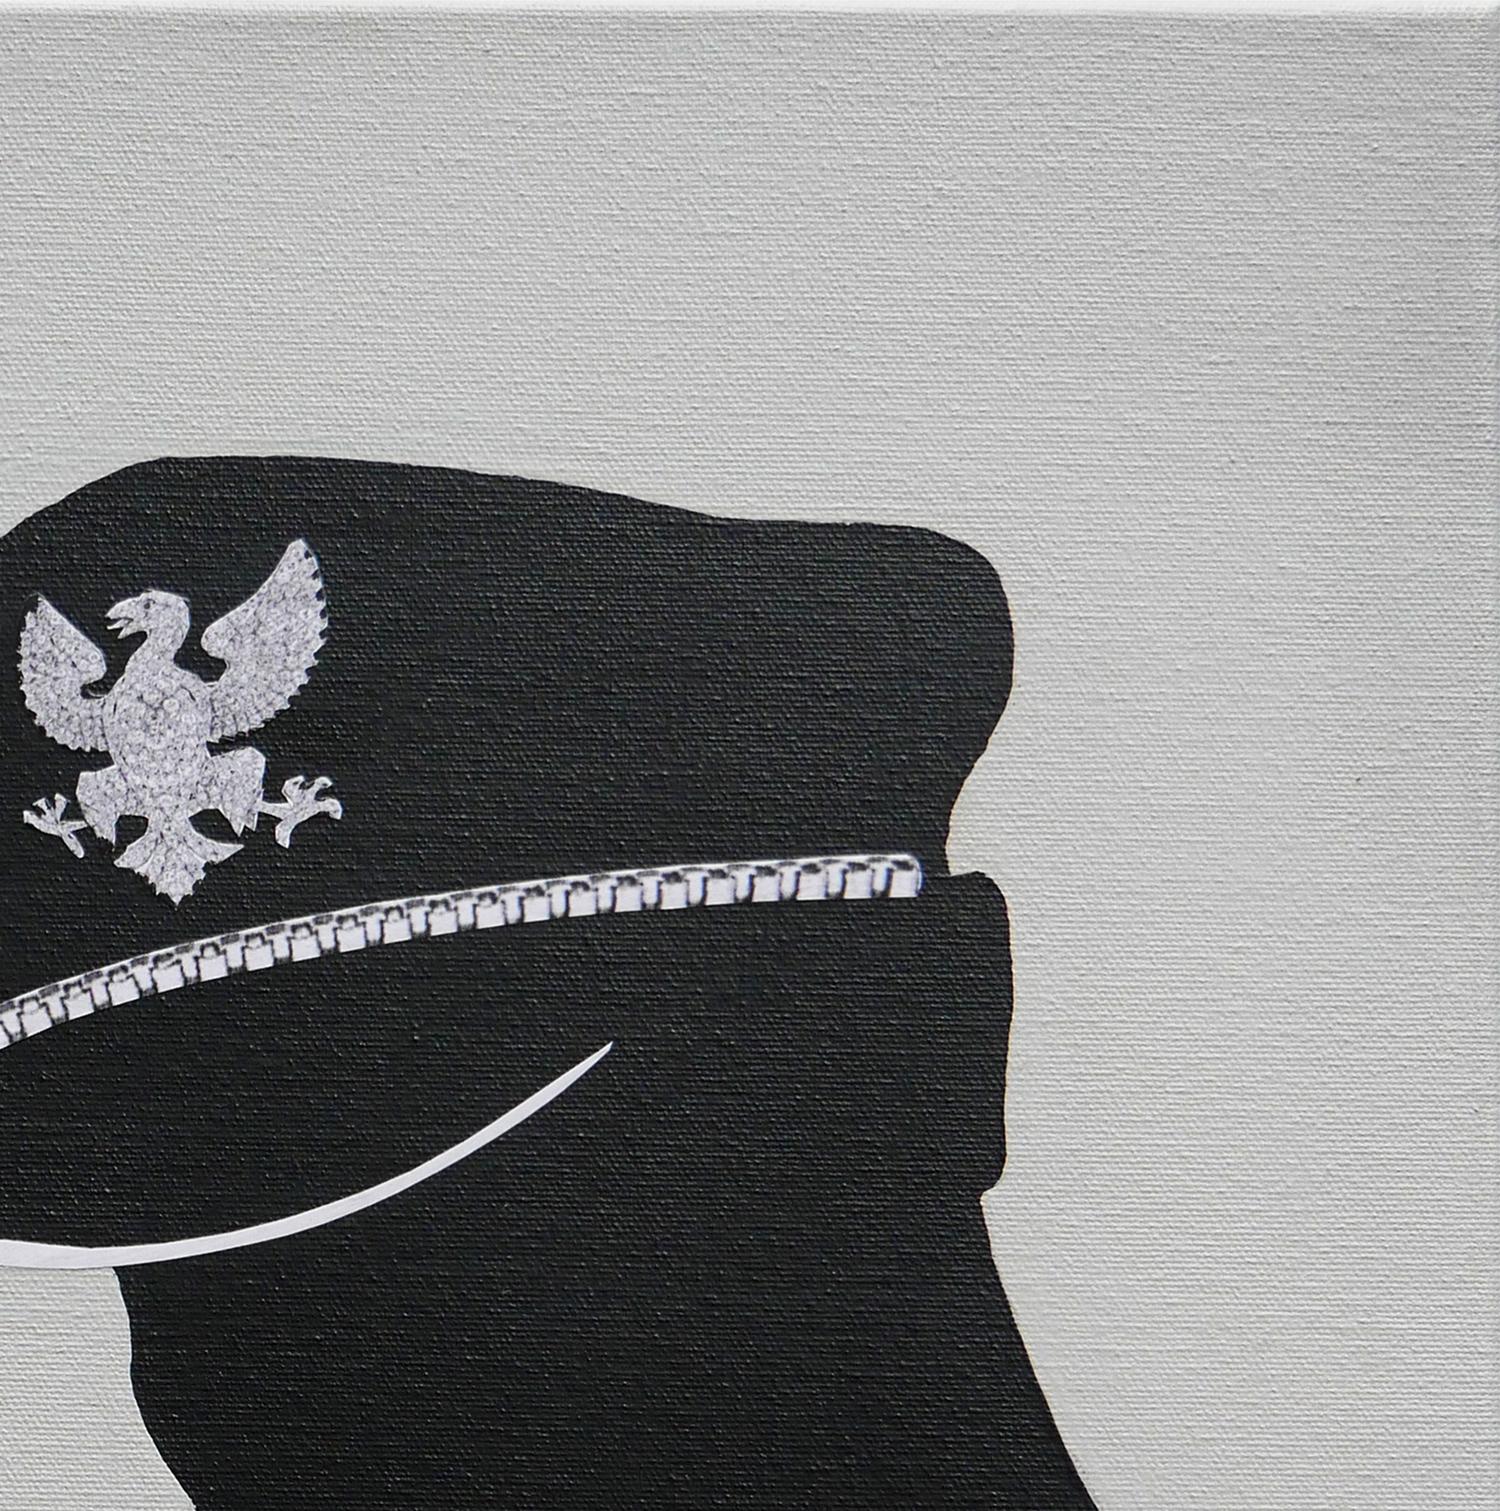 Graue, schwarze und weiße abstrakte zeitgenössische figurative Malerei des Künstlers Scott Woodard aus Houston, TX. Das Gemälde zeigt die Silhouette eines Mannes, der einen Polizeihut trägt und eine Zigarette raucht. Signiert vom Künstler unten